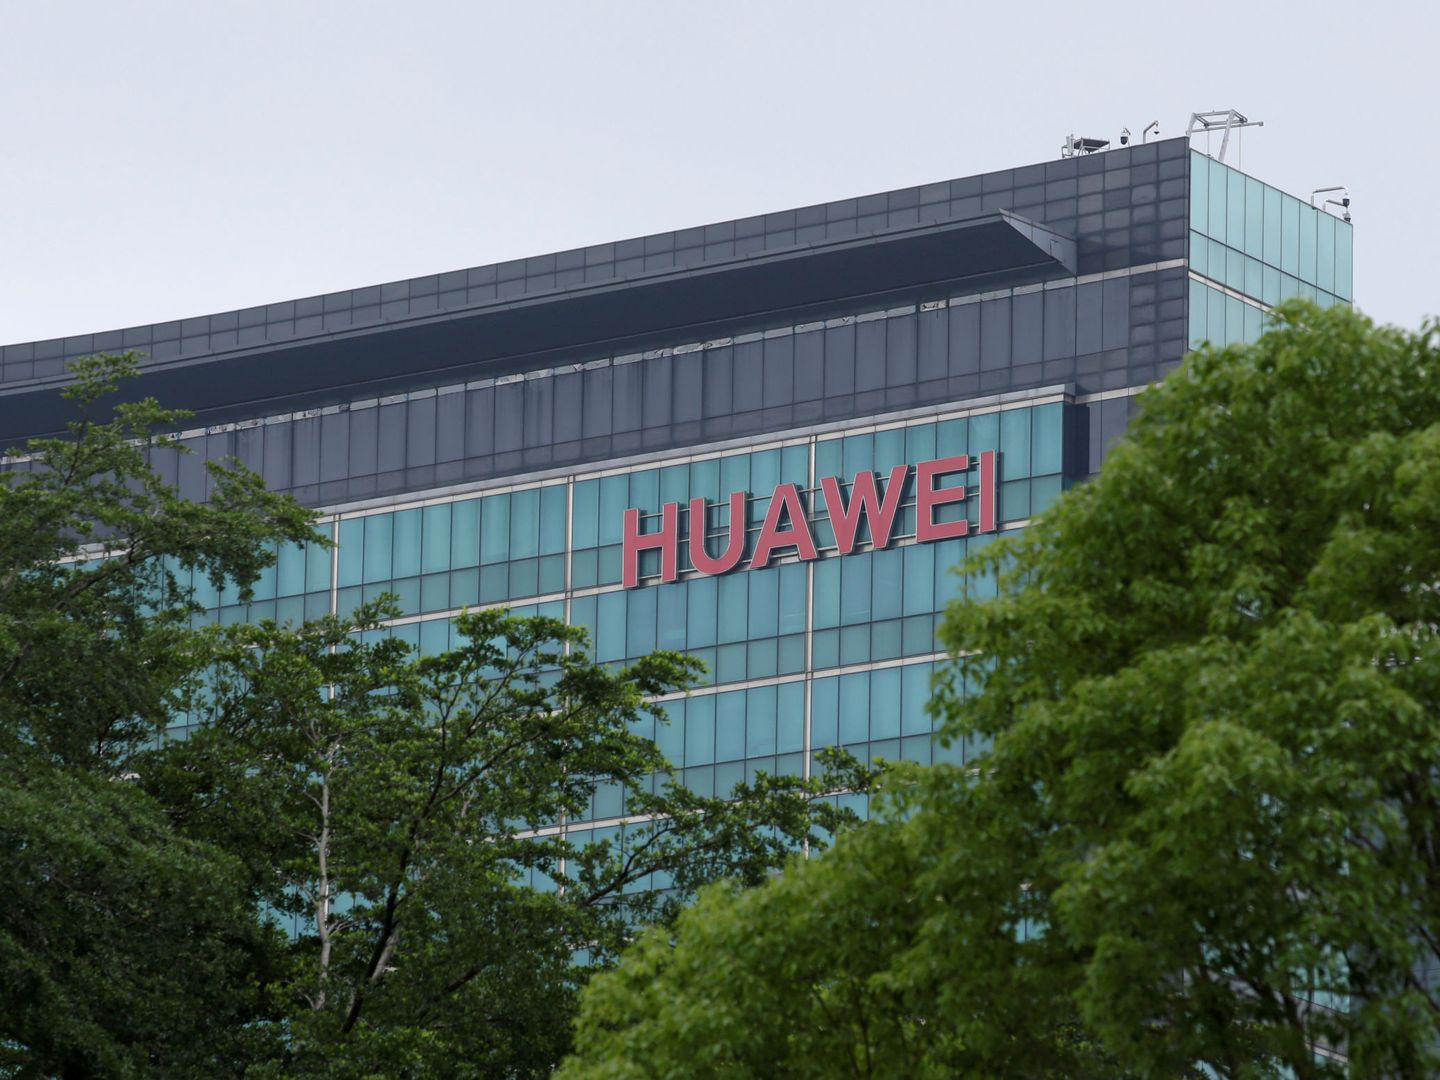 Oficinas de Huawei en Shenzhen. (Reuters)